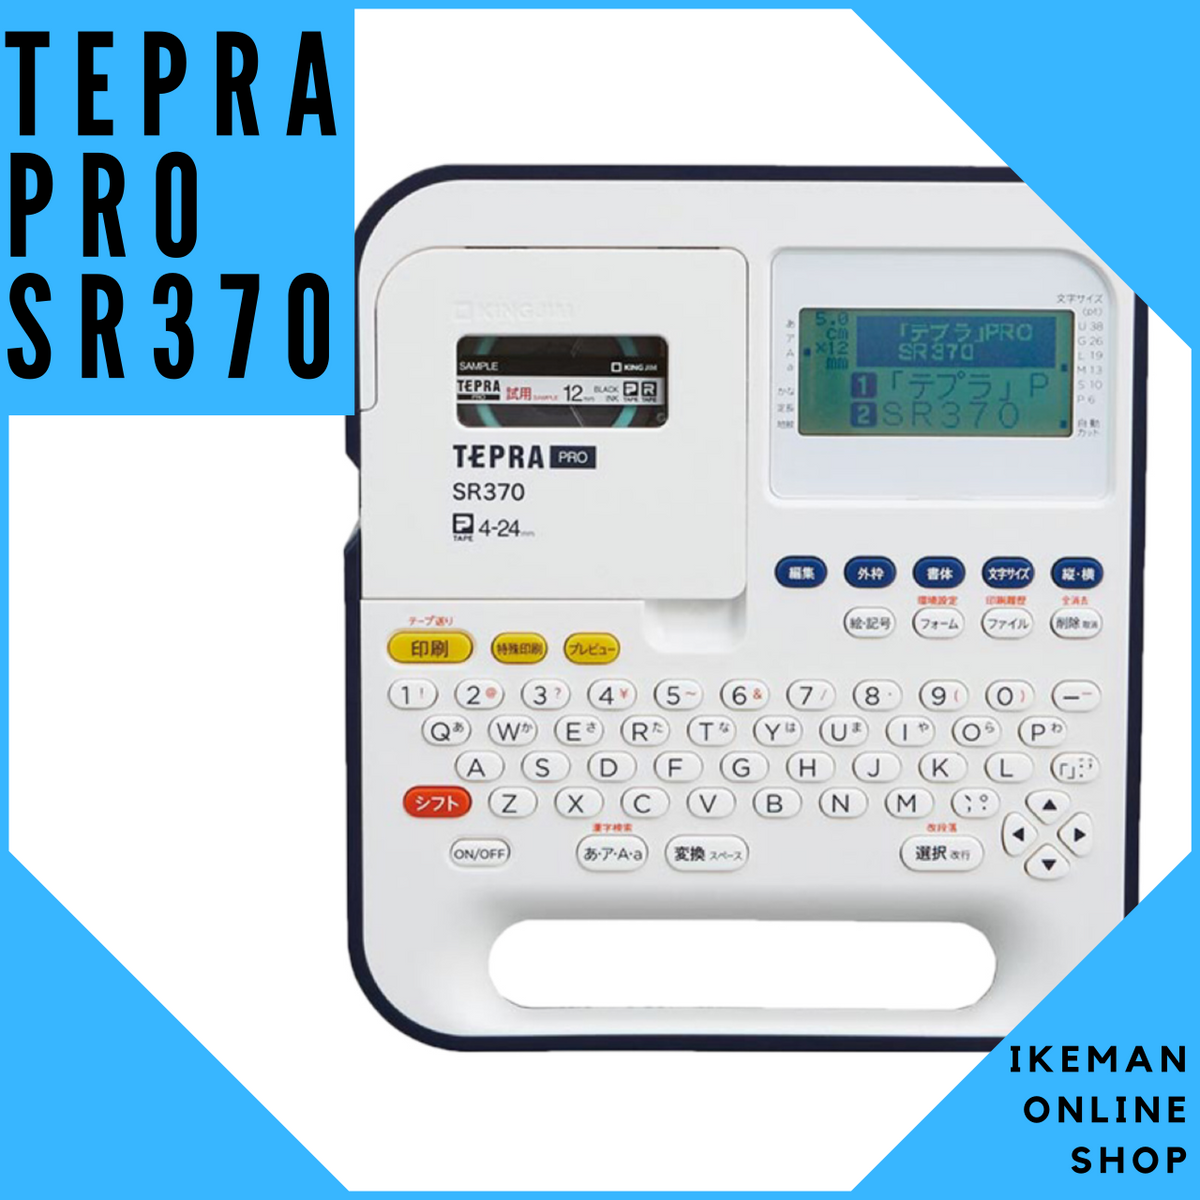 ラベルライター テプラ TEPRA PRO SR370 – TAXFREE|stationery|文房具屋|はんこ|イケマンオンラインショップ